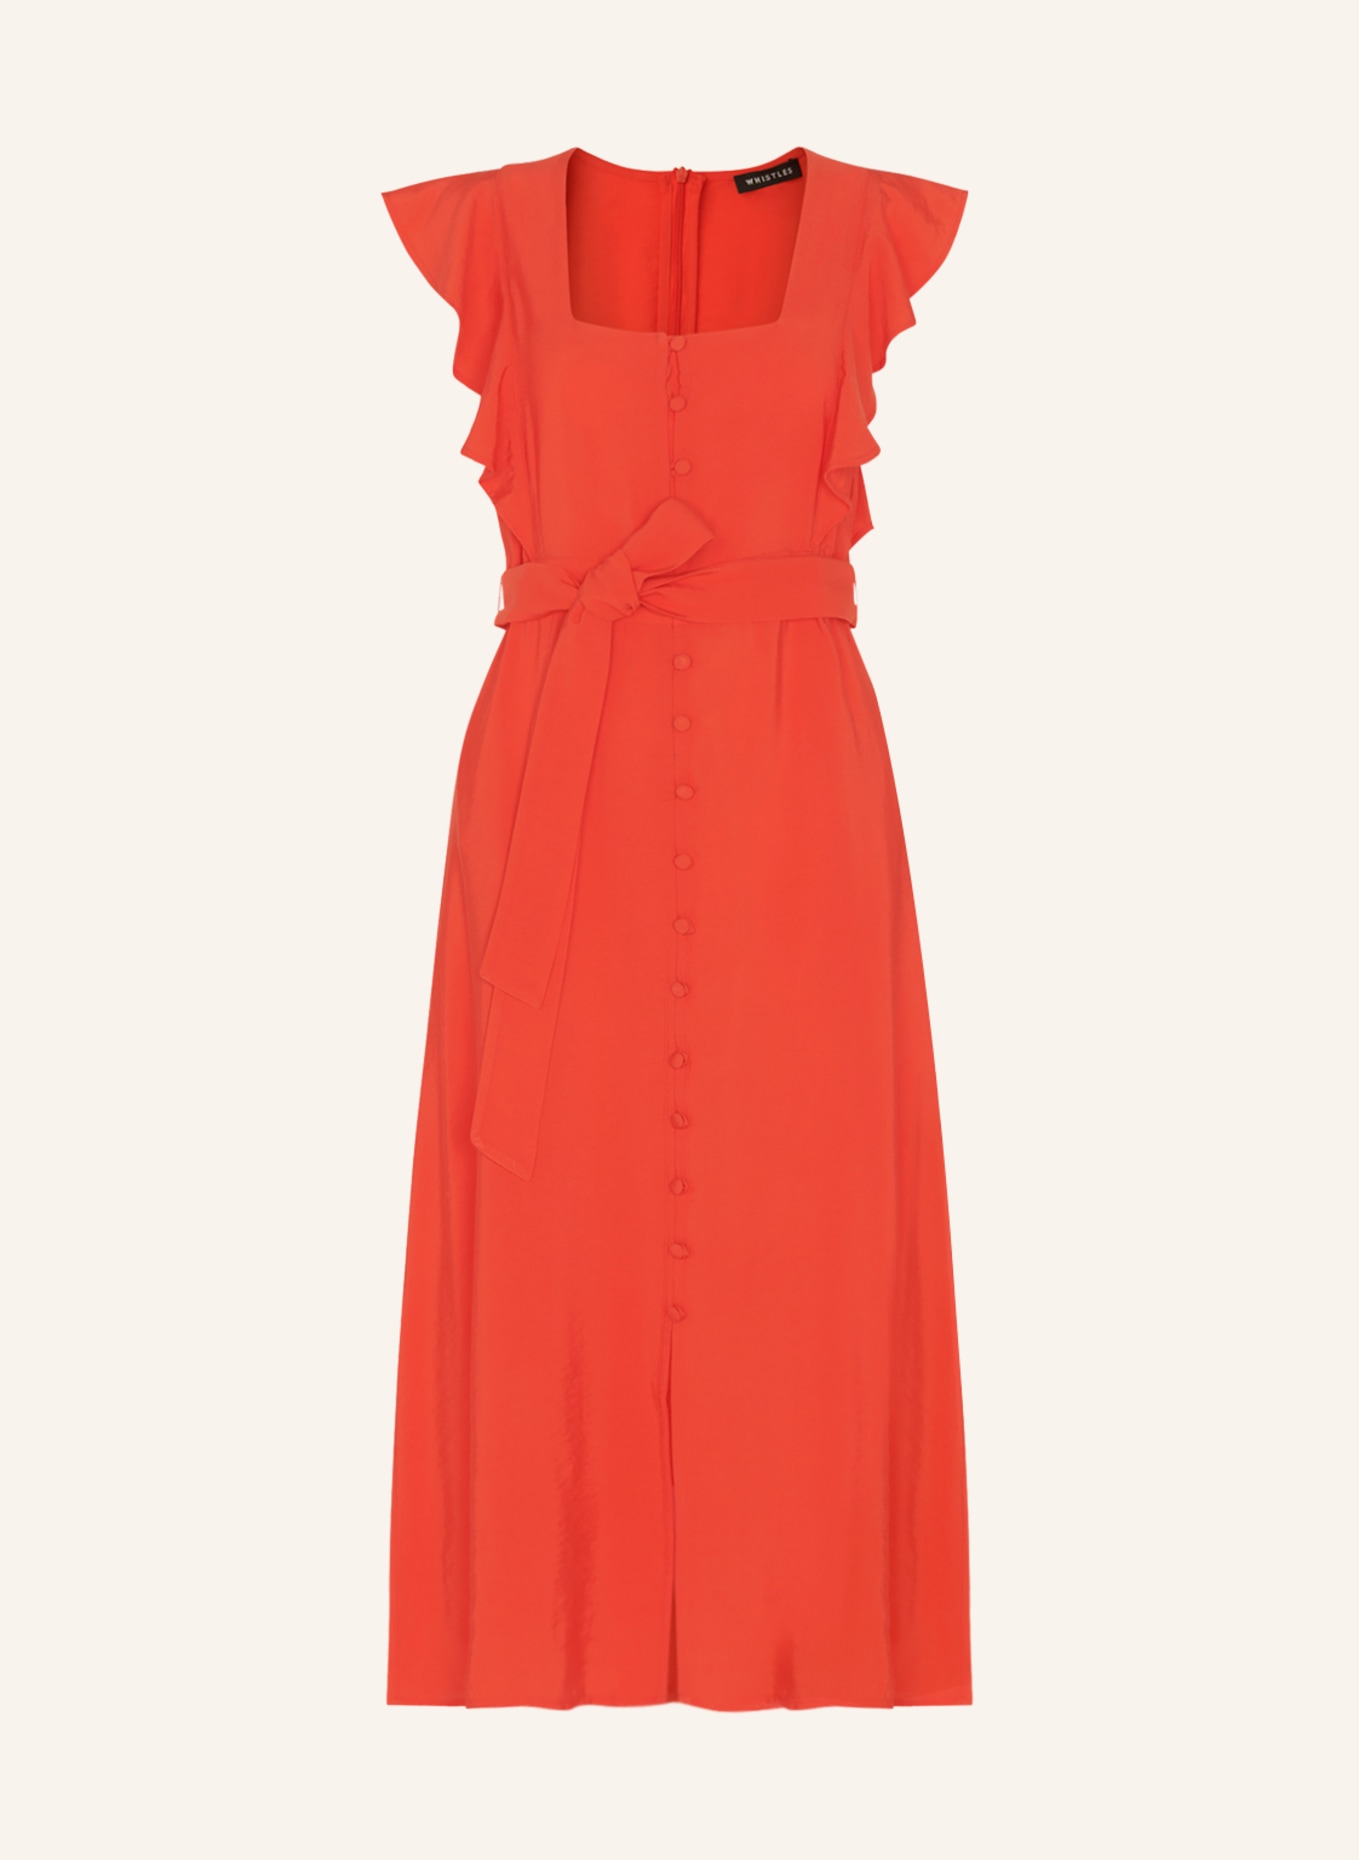 WHISTLES Kleid SOPHIE mit Volants, Farbe: ORANGE (Bild 1)